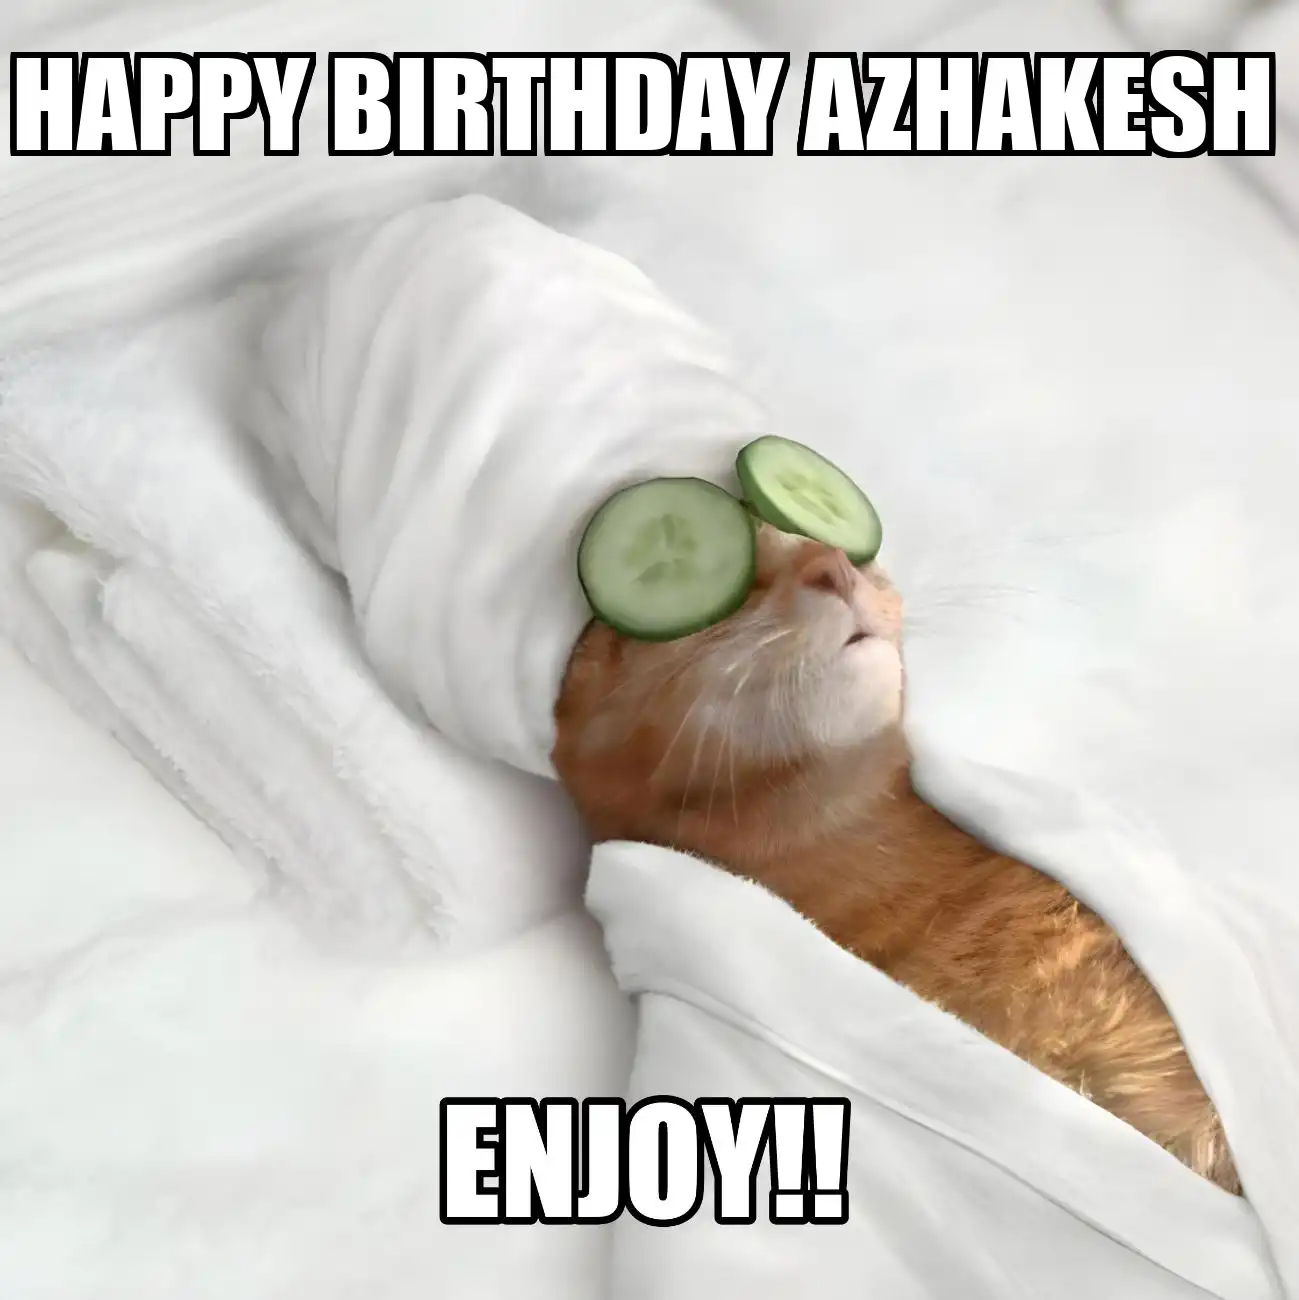 Happy Birthday Azhakesh Enjoy Cat Meme